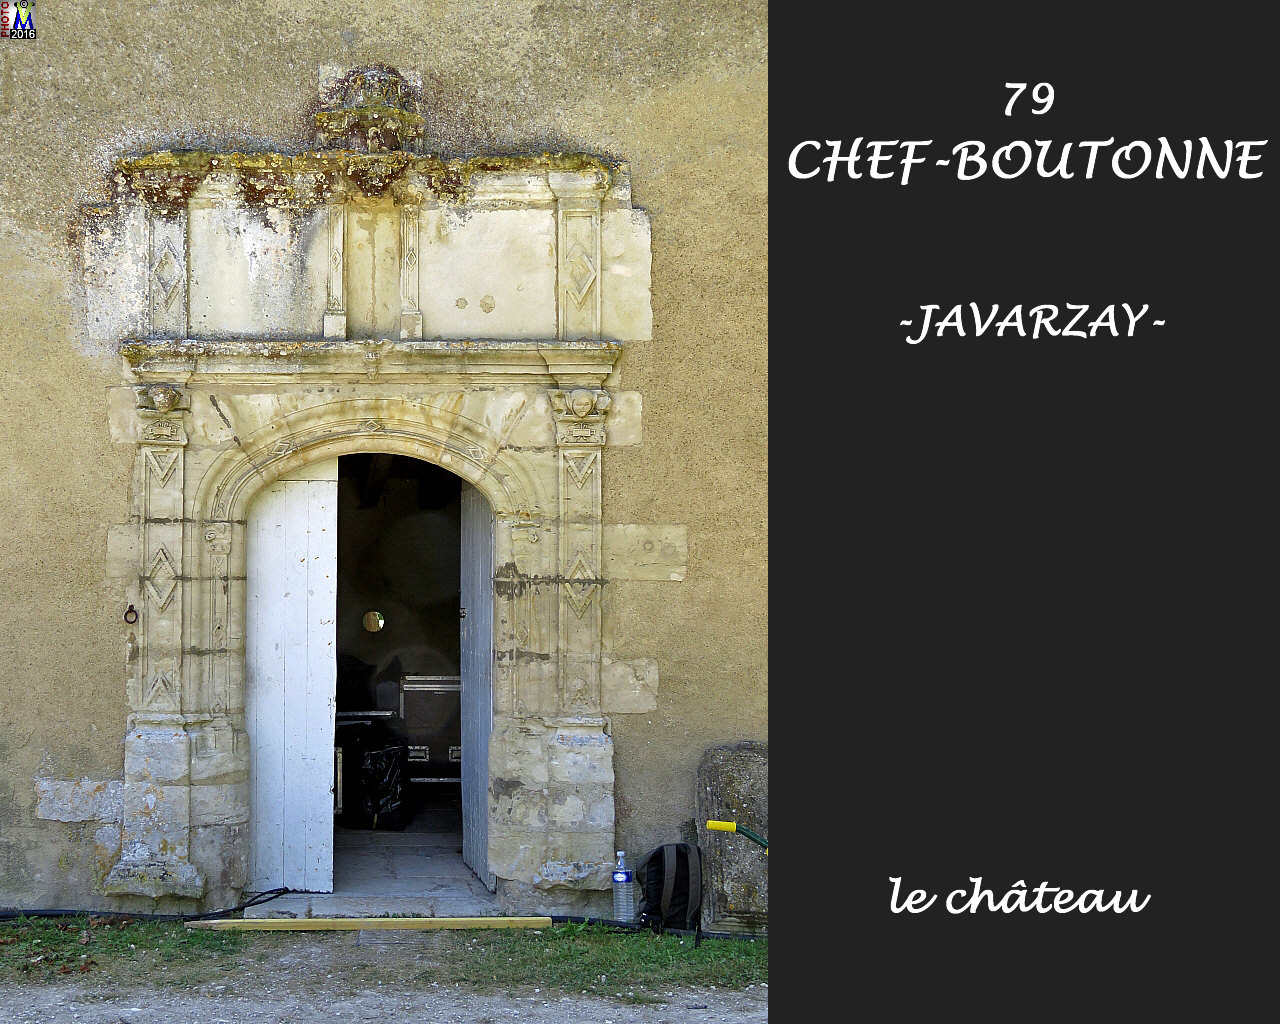 79CHEF-BOUTONNEzJAVARZAY_chateau_1016.jpg